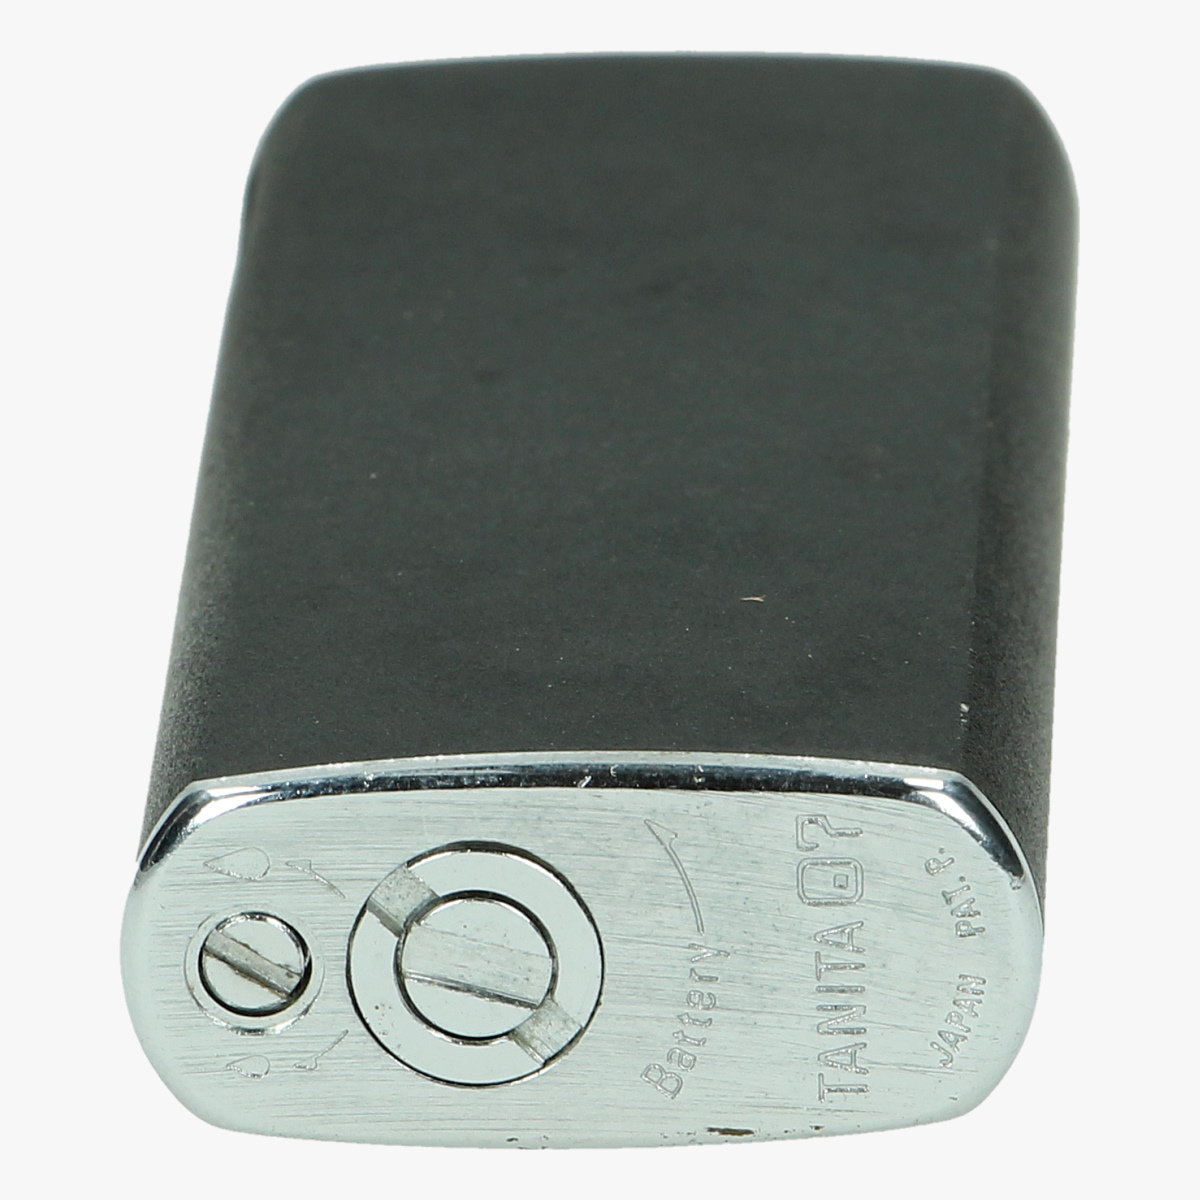 Afbeeldingen van aansteker tanita electronic battery lighter